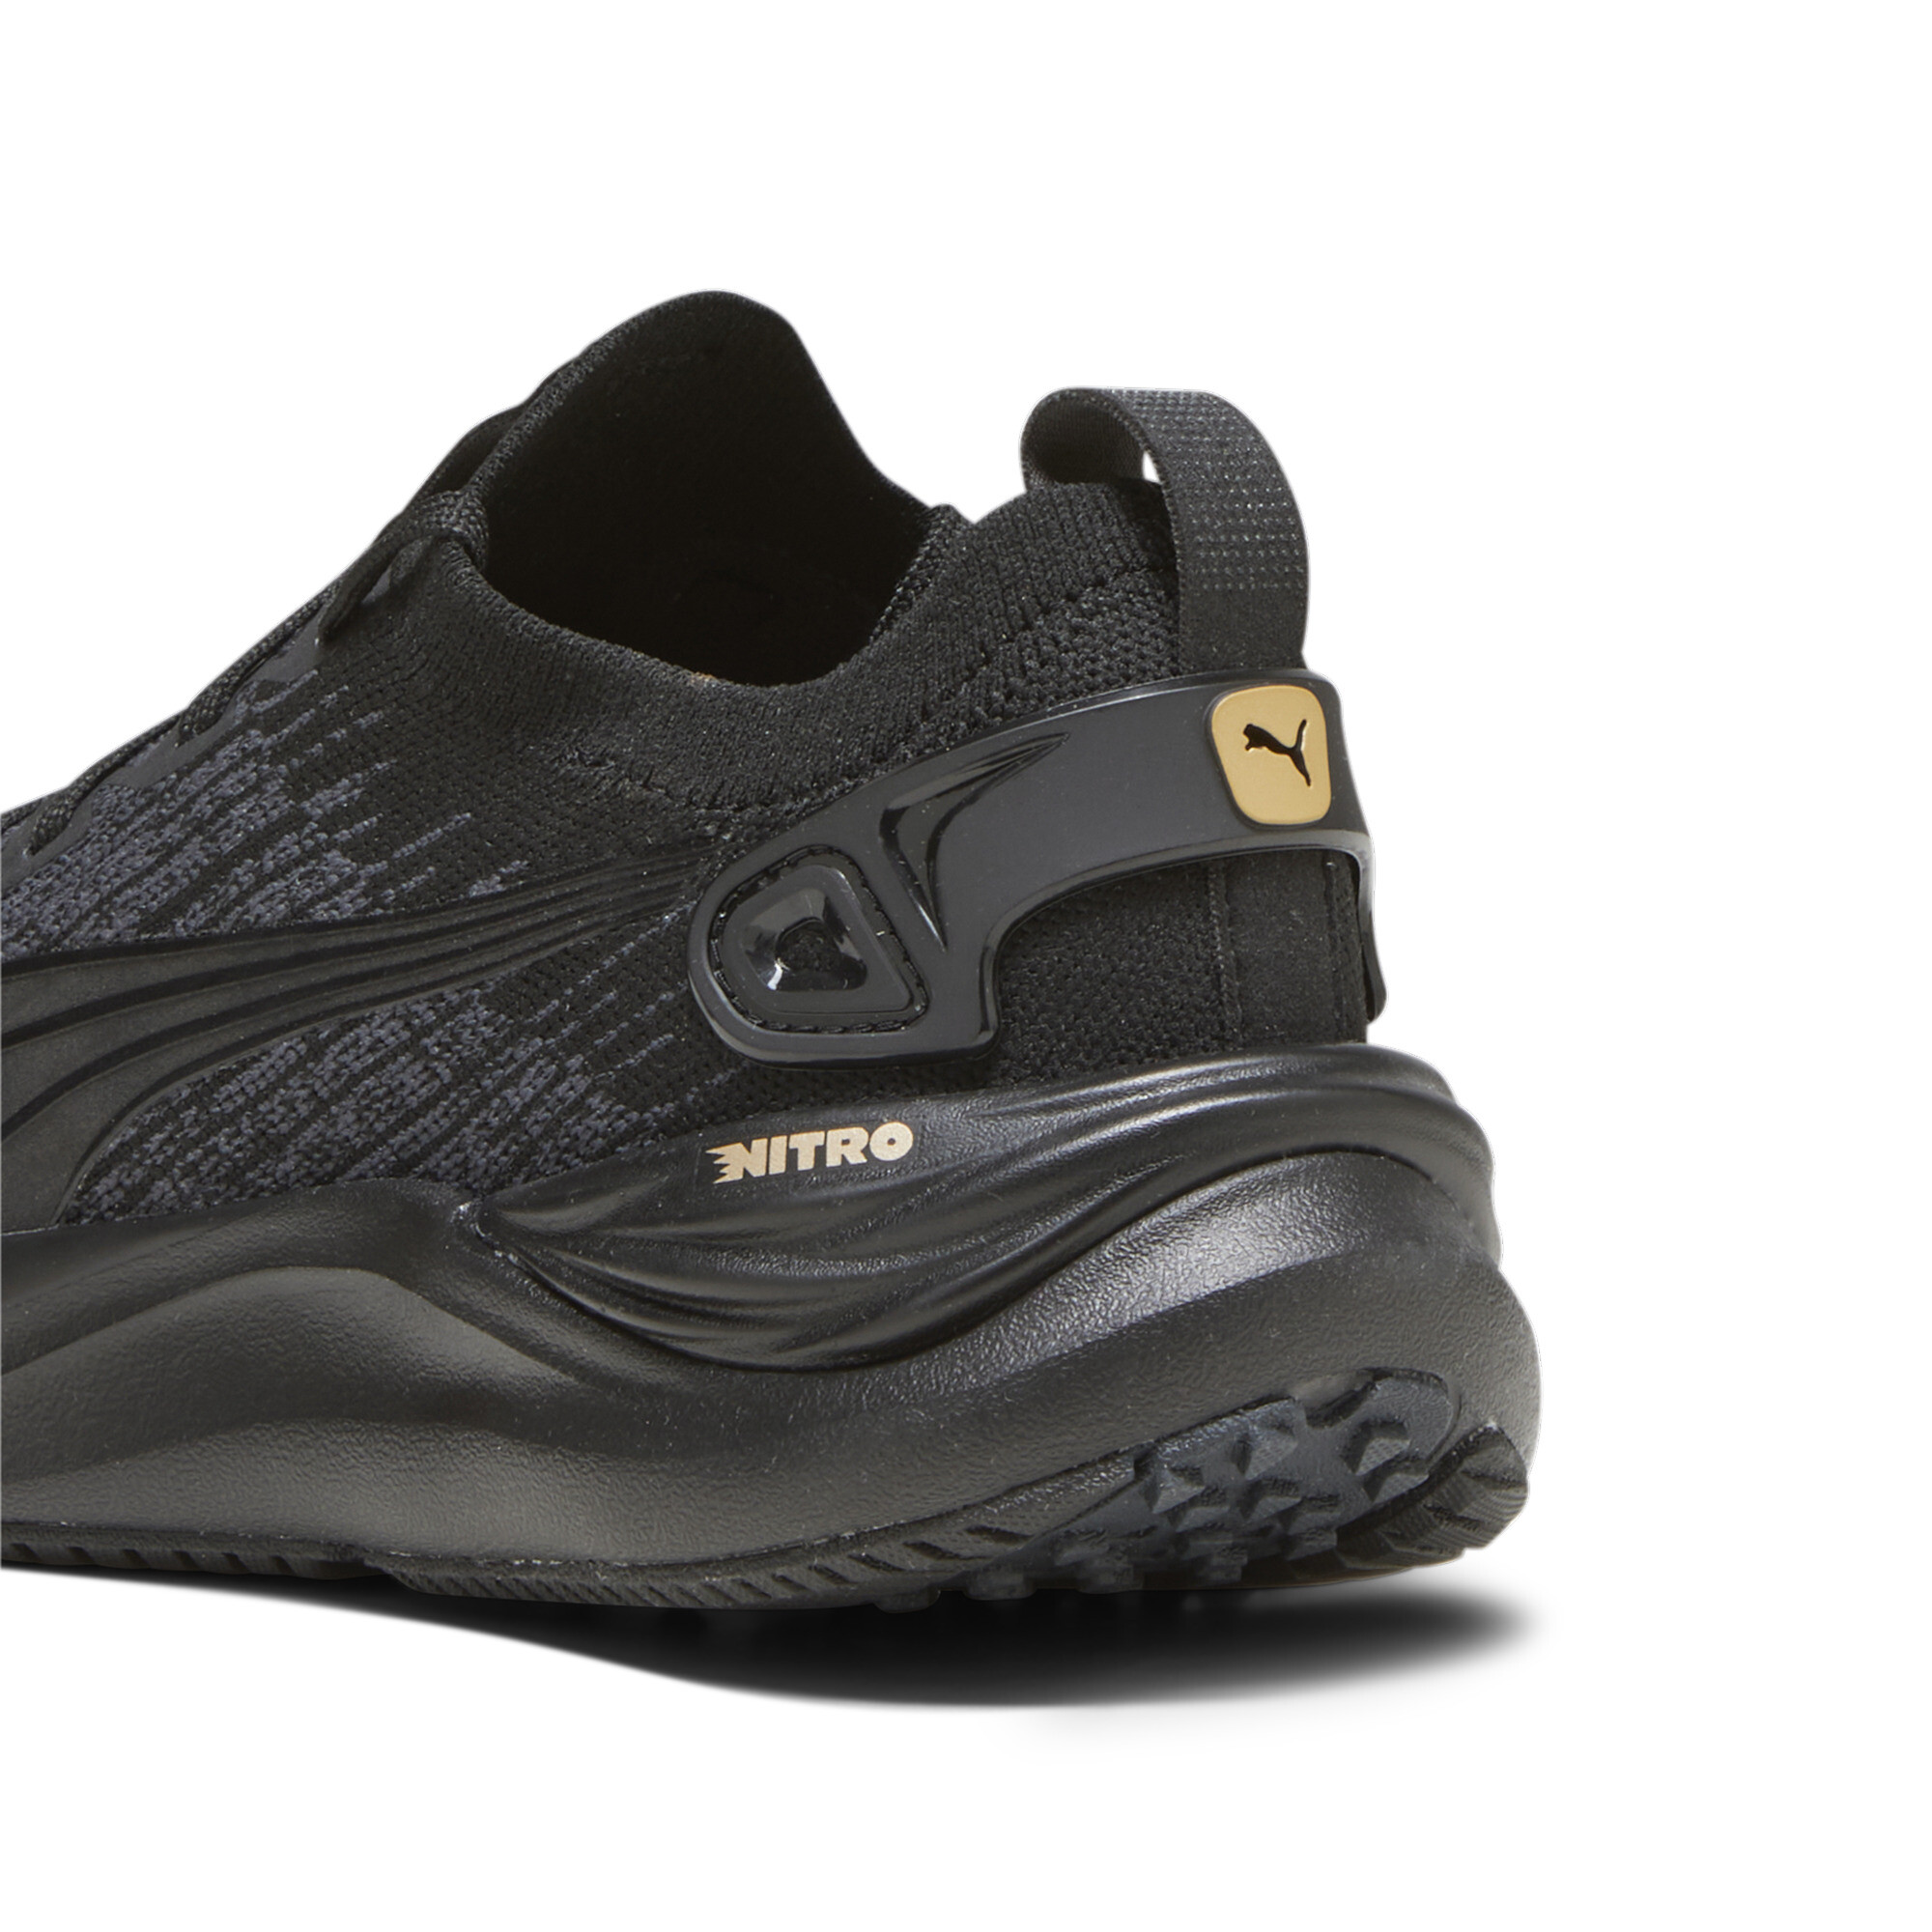 Women's PUMA Electrify NITRO 3 Knit Running Shoes In Black, Size EU 39